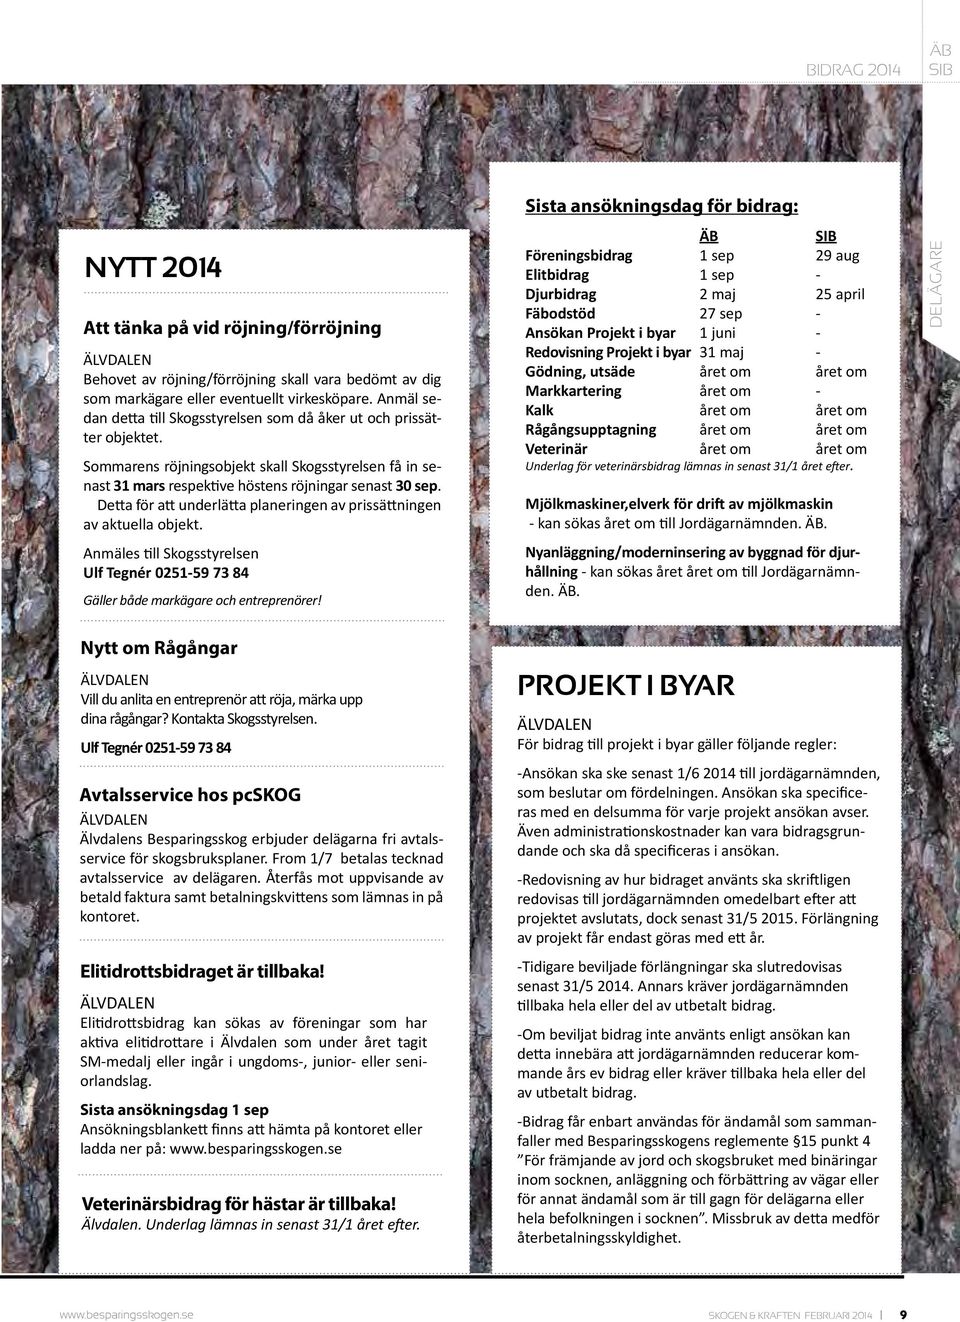 Detta för att underlätta planeringen av prissättningen av aktuella objekt. Anmäles till Skogsstyrelsen Ulf Tegnér 0251-59 73 84 Gäller både markägare och entreprenörer!